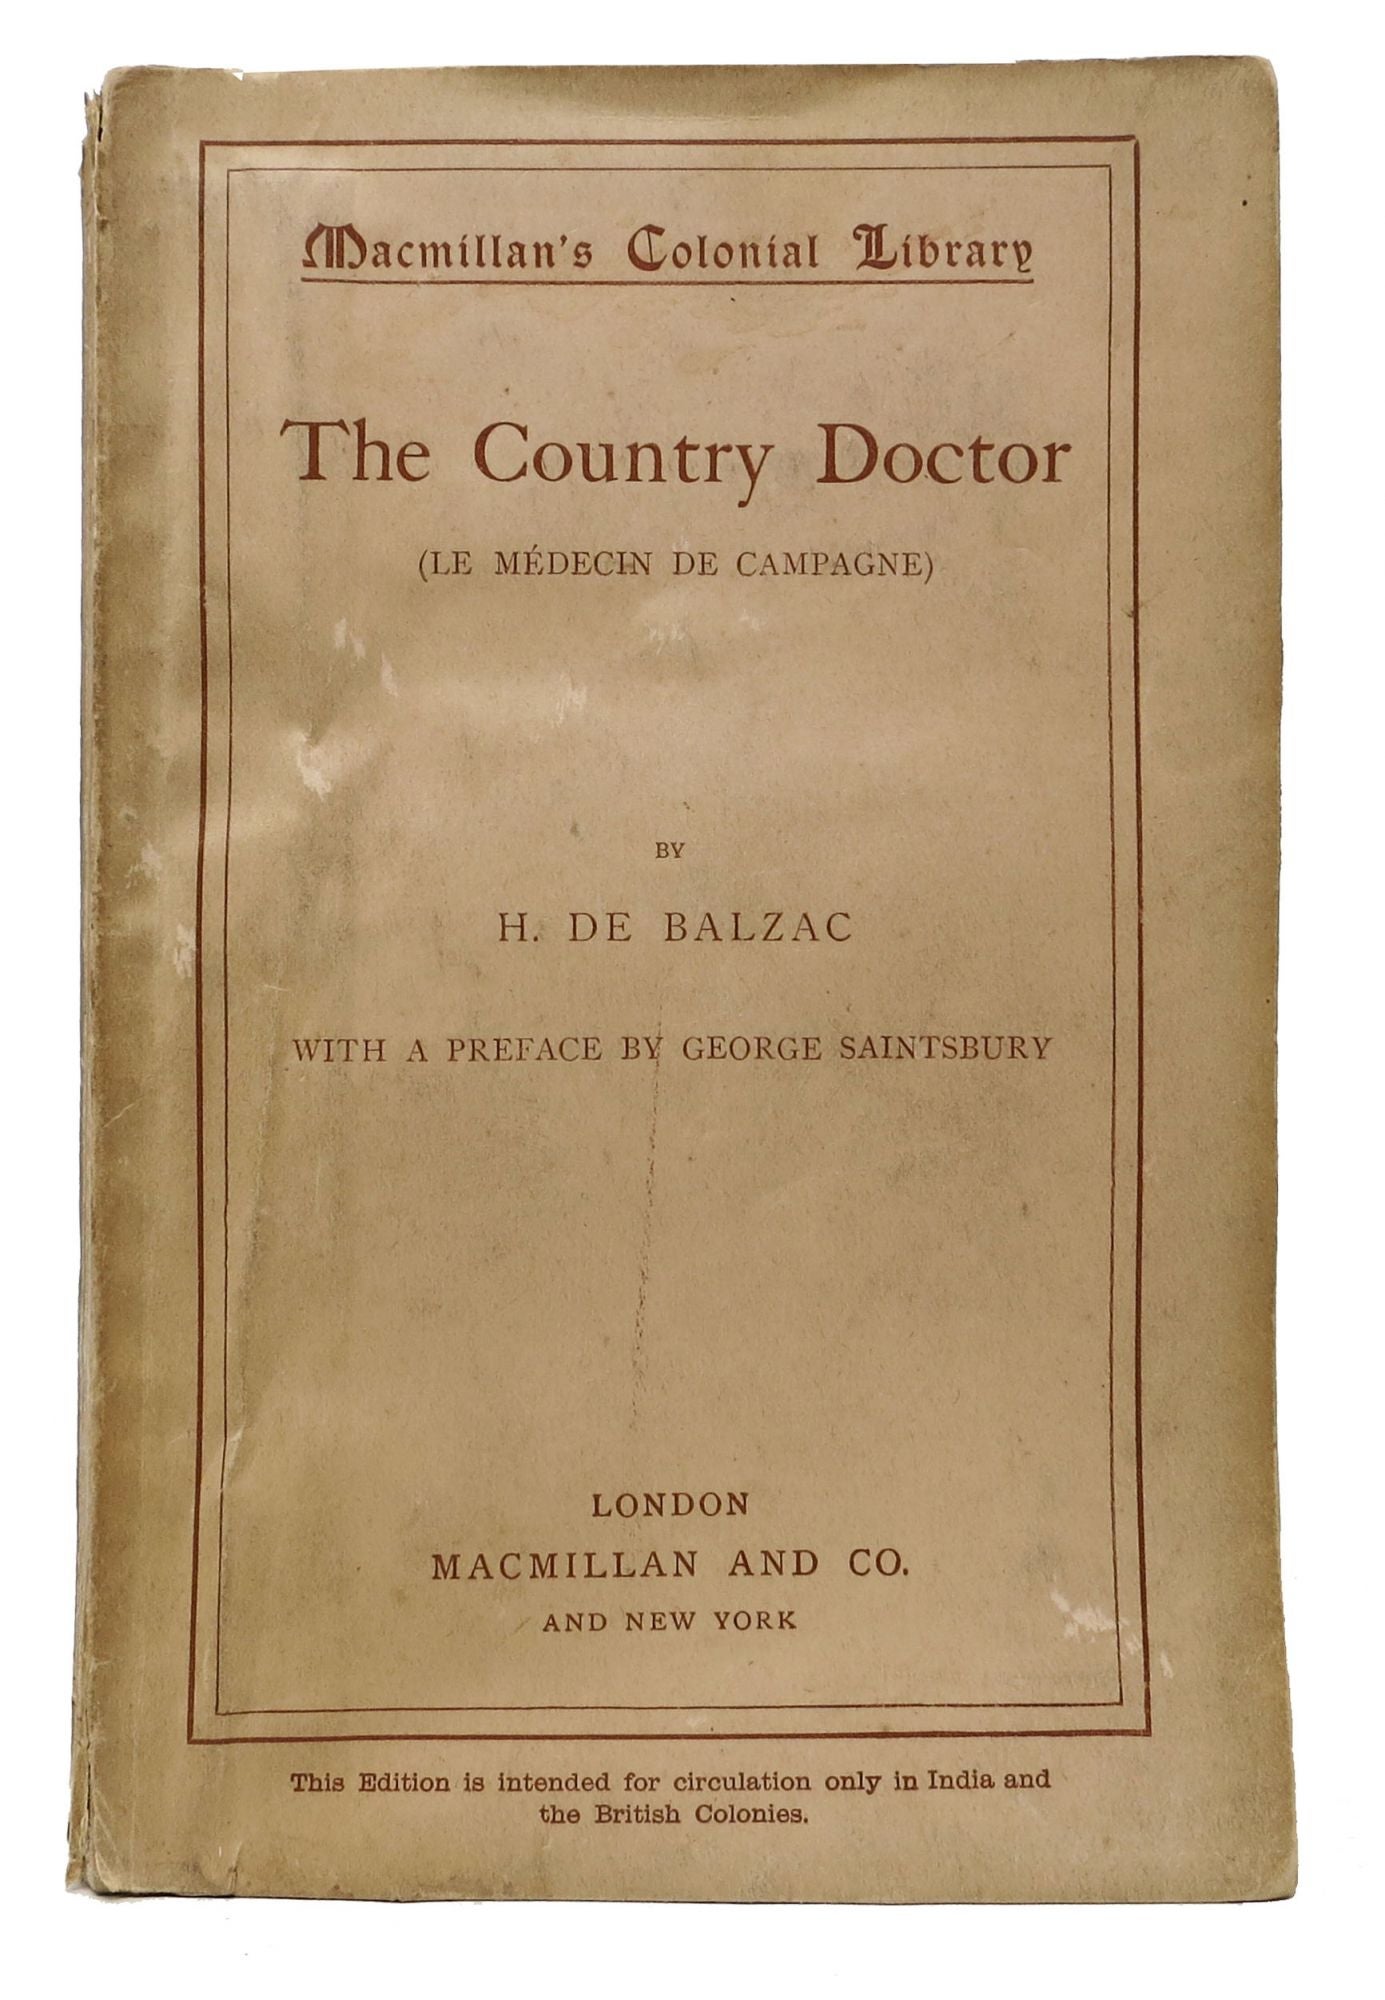 Balzac, H. De [1799 - 1850]. Marriage, Ellen - Translator. Saintsbury, George [1845 - 1933] - Contributor - The COUNTRY DOCTOR (Le Mdecin de Campagne).; Macmillan's Colonial Library No. 247